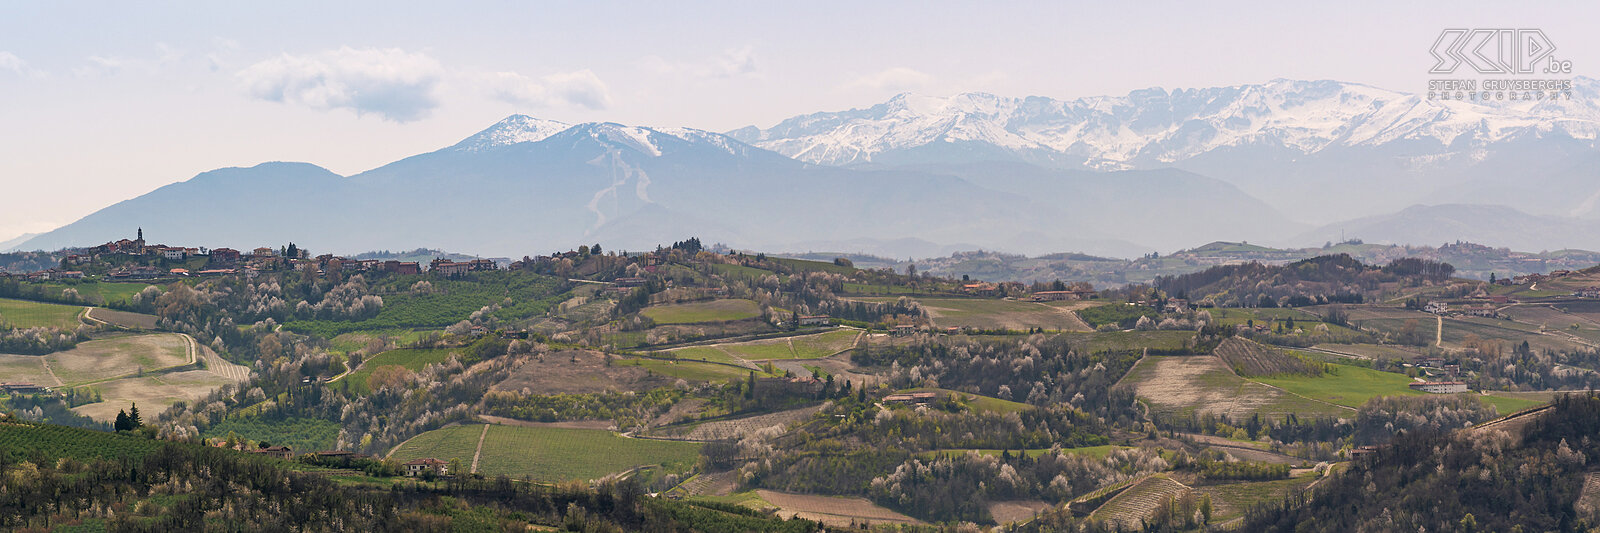 Langhe regio Panorama beeld van de heuvelachtige Langhe regio met de vele beroemde wijngaarden en pittoreske dorpjes op de heuvels Stefan Cruysberghs